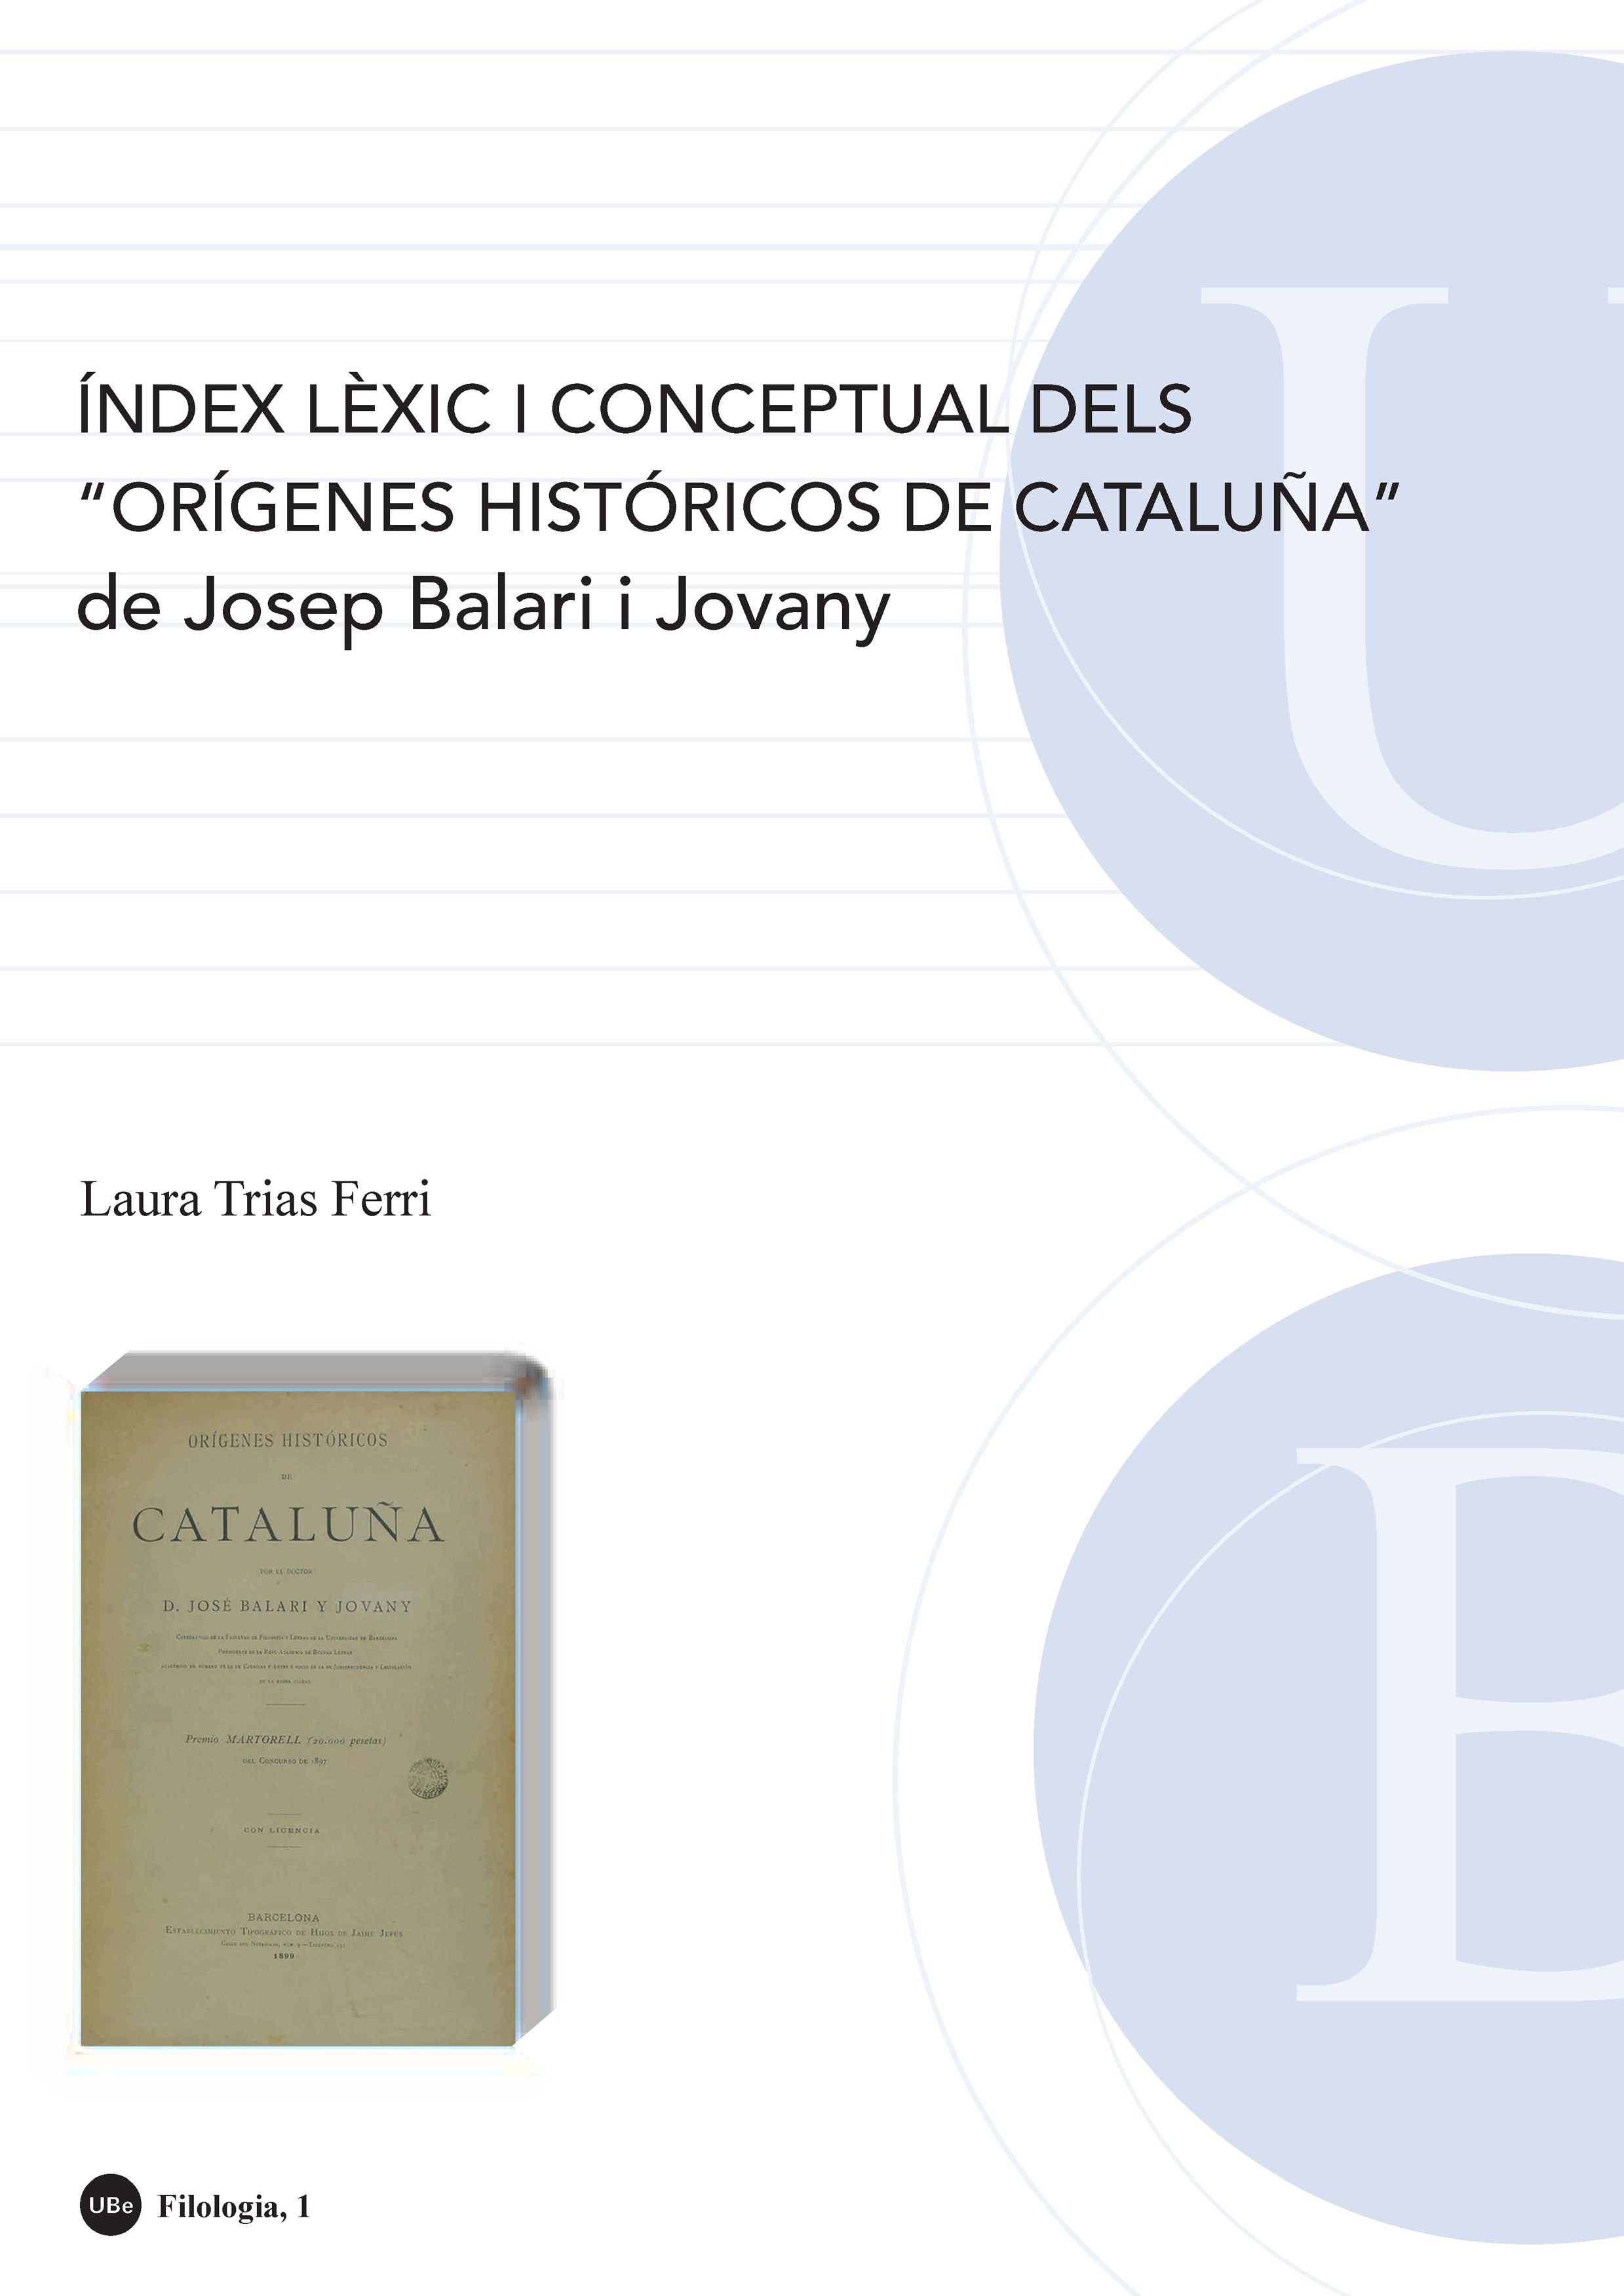 Ã�ndex lÃ¨xic i conceptual dels "OrÃ­genes histÃ³ricos de CataluÃ±a" de Josep Balari i Jovany